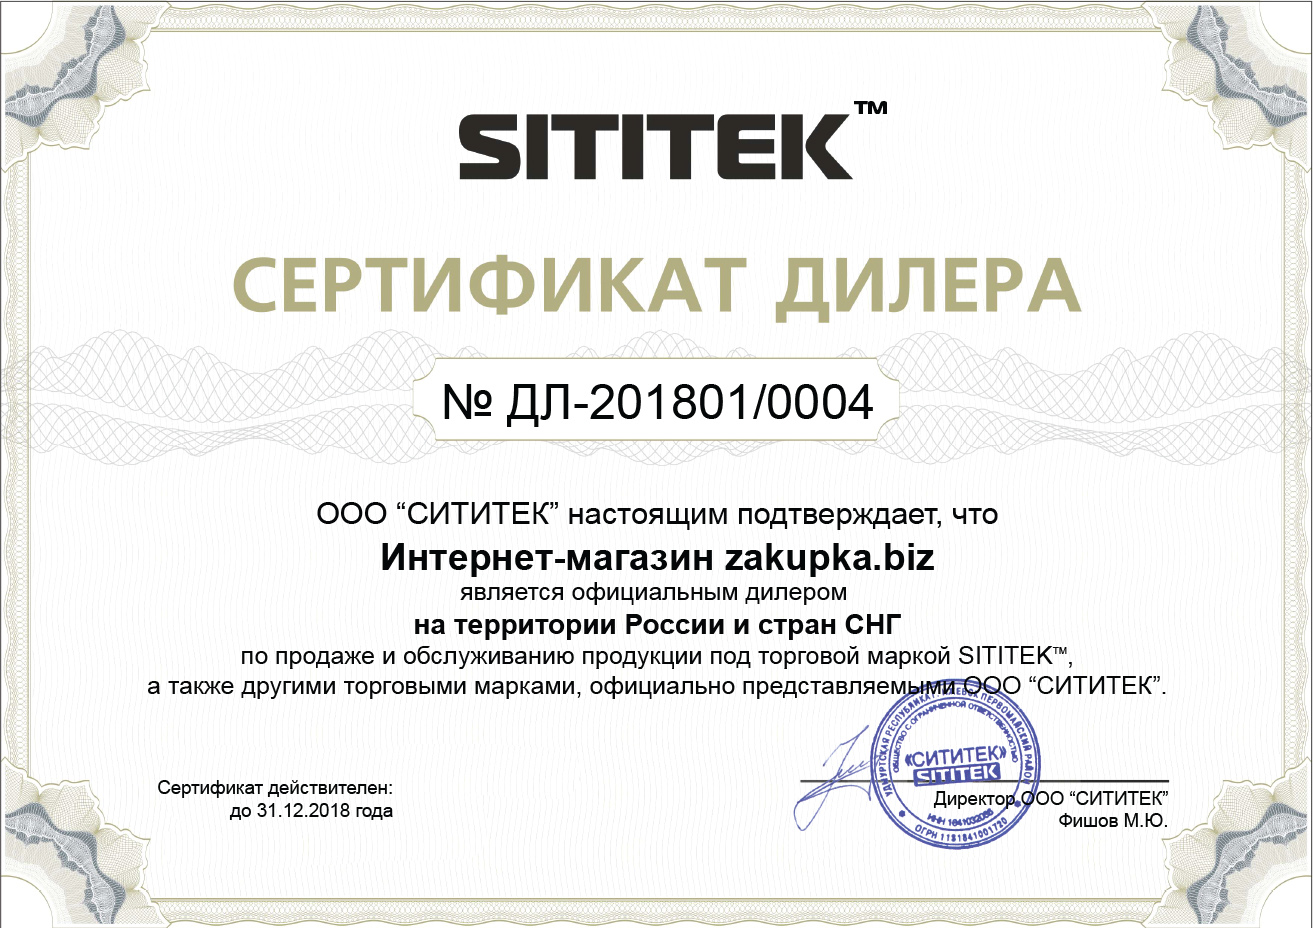 Официальный сертификат дилера, подтверждающий право на продажу и техобслуживание товаров, выпущенных под брендом "Sititek" (нажмите для увеличения)